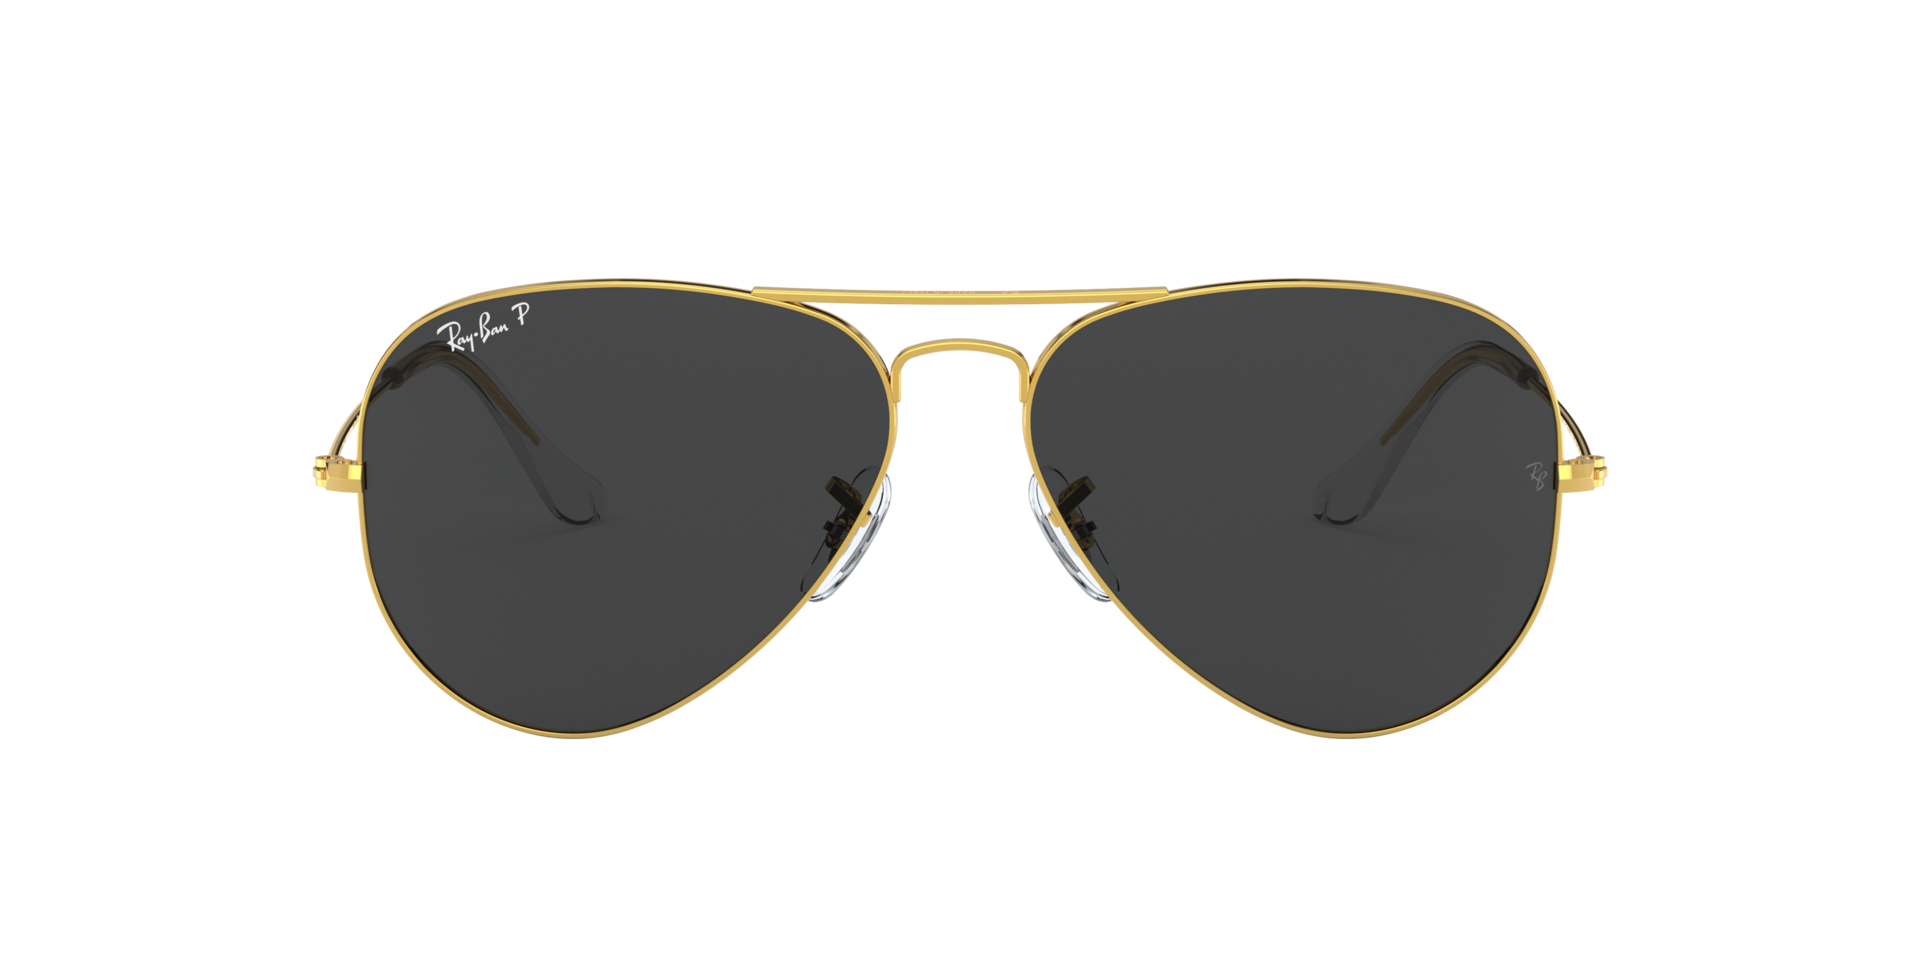 Buy PIRASO Aviator Sunglasses Golden, Black For Men & Women Online @ Best  Prices in India | Flipkart.com